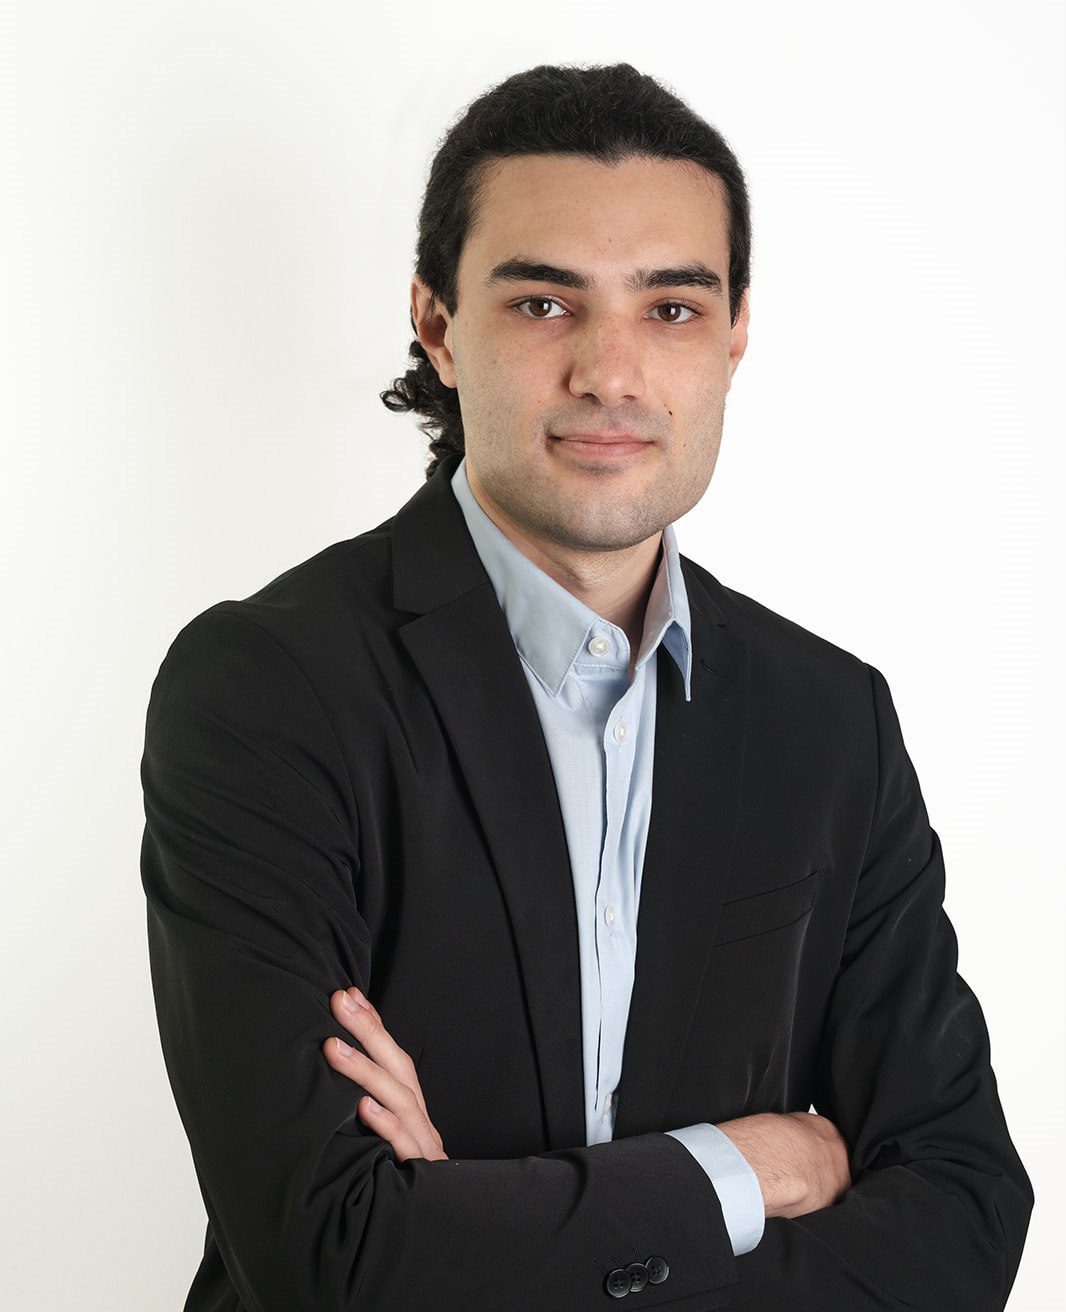 Jose María Sánchez – Java Software Engineer